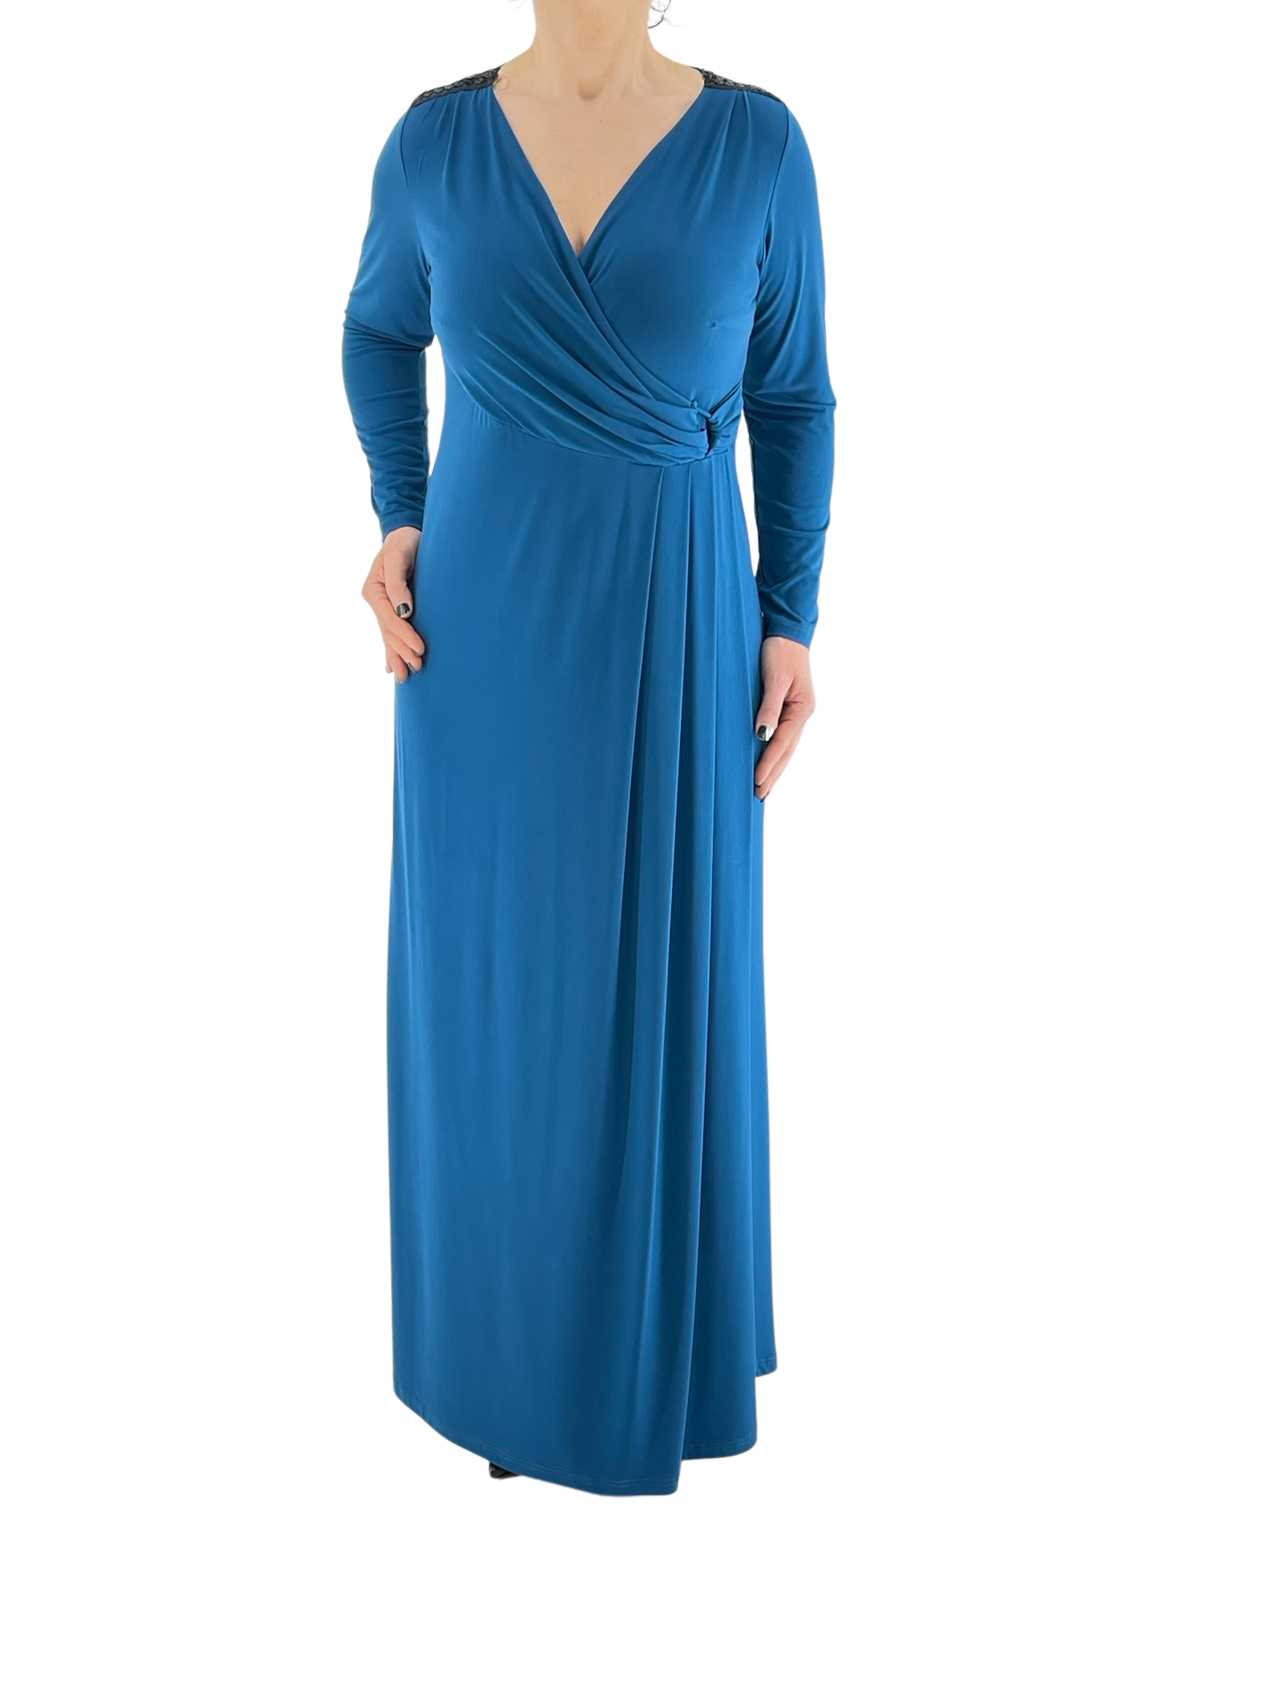 Φόρεμα κρουαζέ-φάκελος κωδ. 8508 μπροστινή όψη